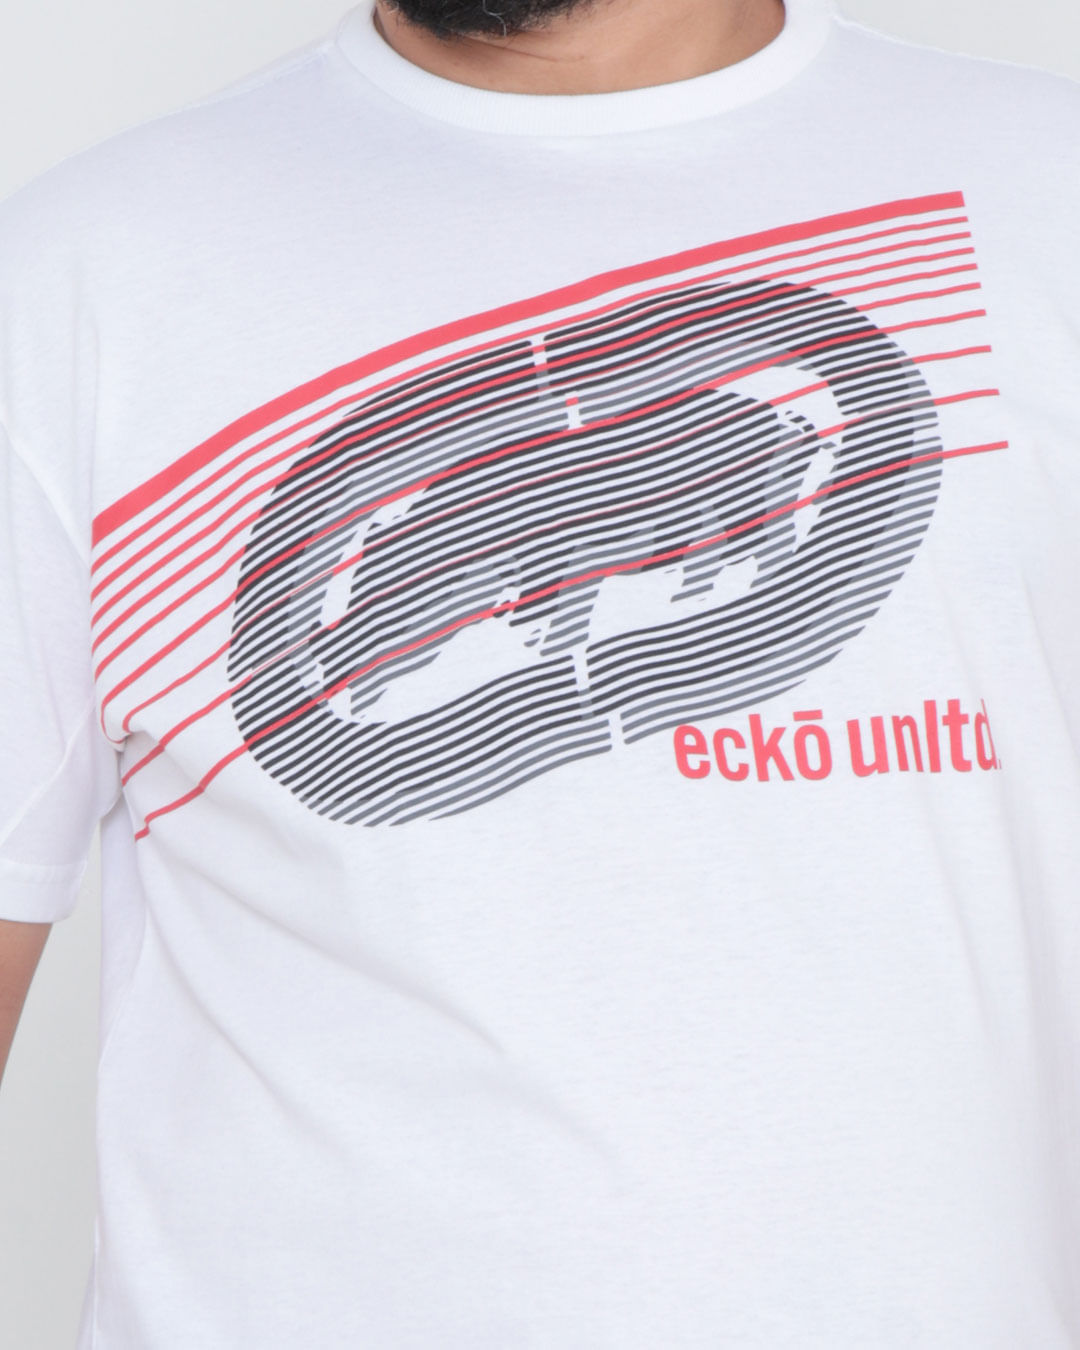 Camiseta-Plus-Size-Estampa-Ecko-Unlimited-Branca